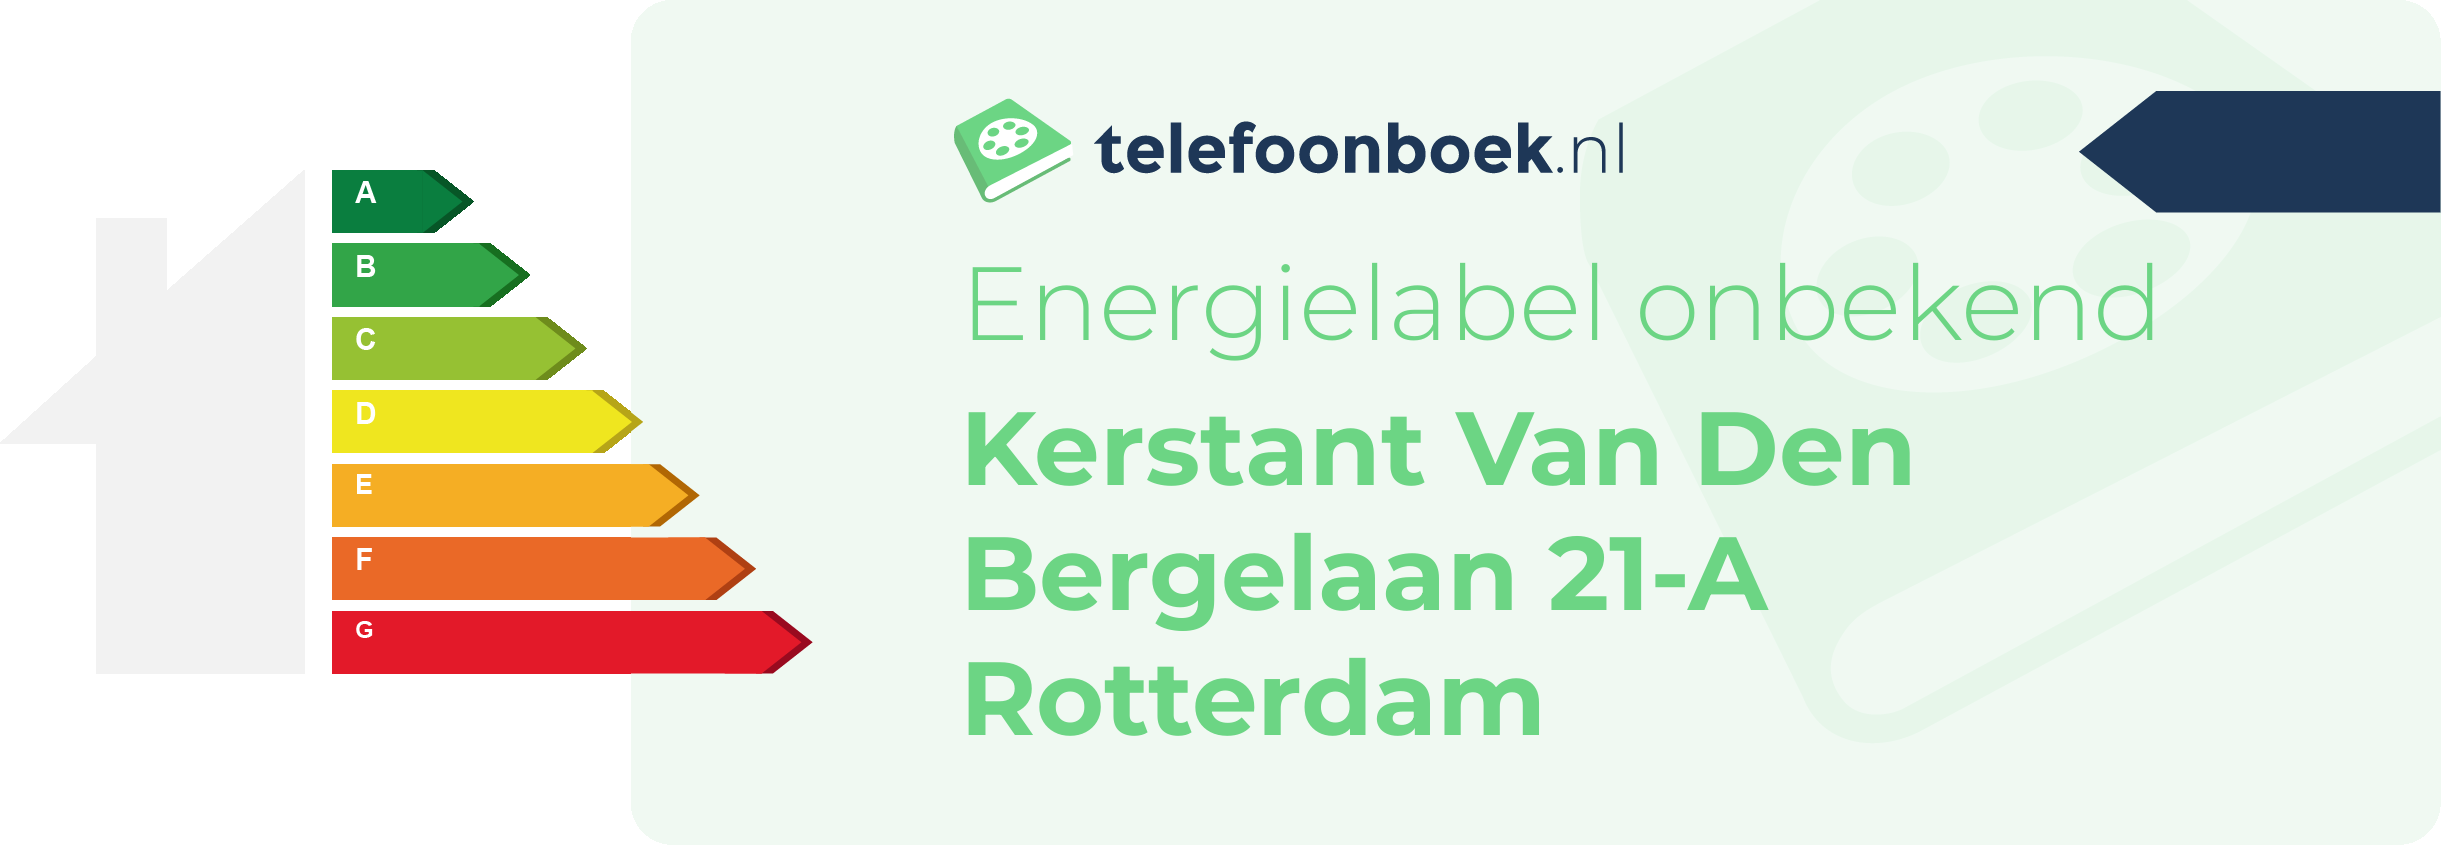 Energielabel Kerstant Van Den Bergelaan 21-A Rotterdam